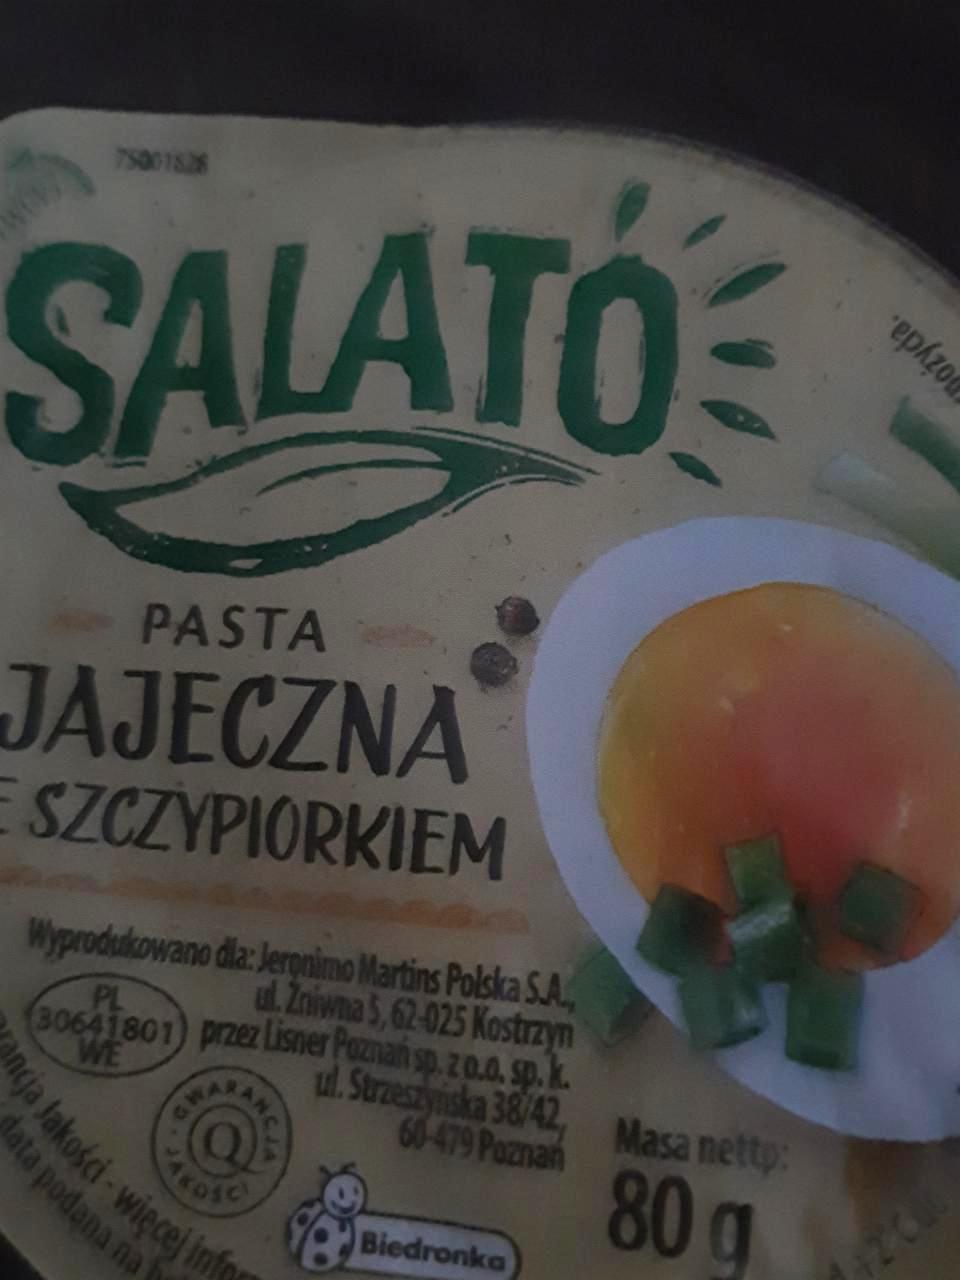 Fotografie - Pasta jajaczena ze szczypiorkiem Salato